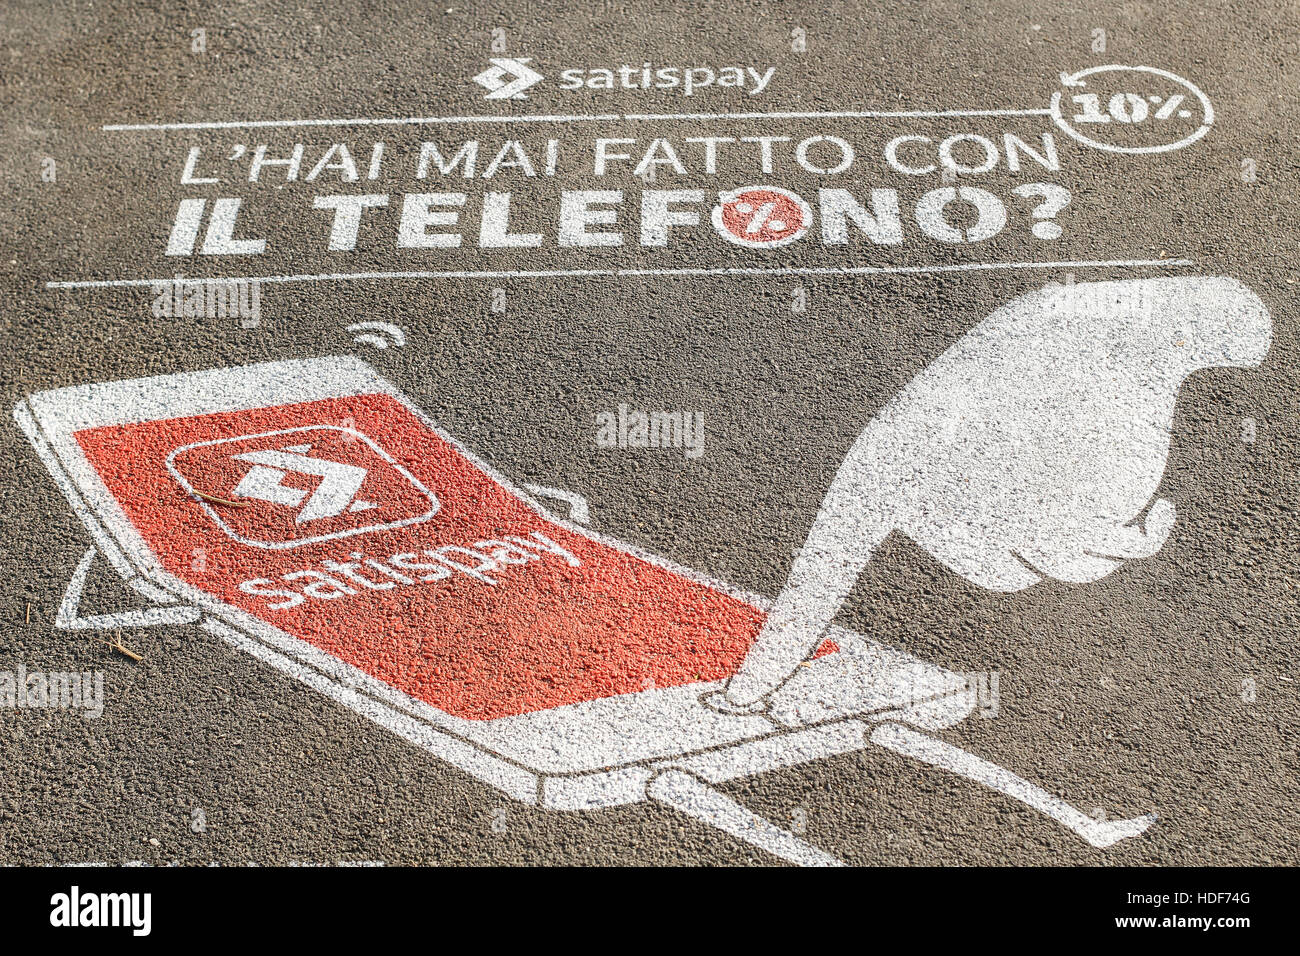 Satispay (una società digitale per i pagamenti) la pubblicità in strada. Torino, Italia. Foto Stock